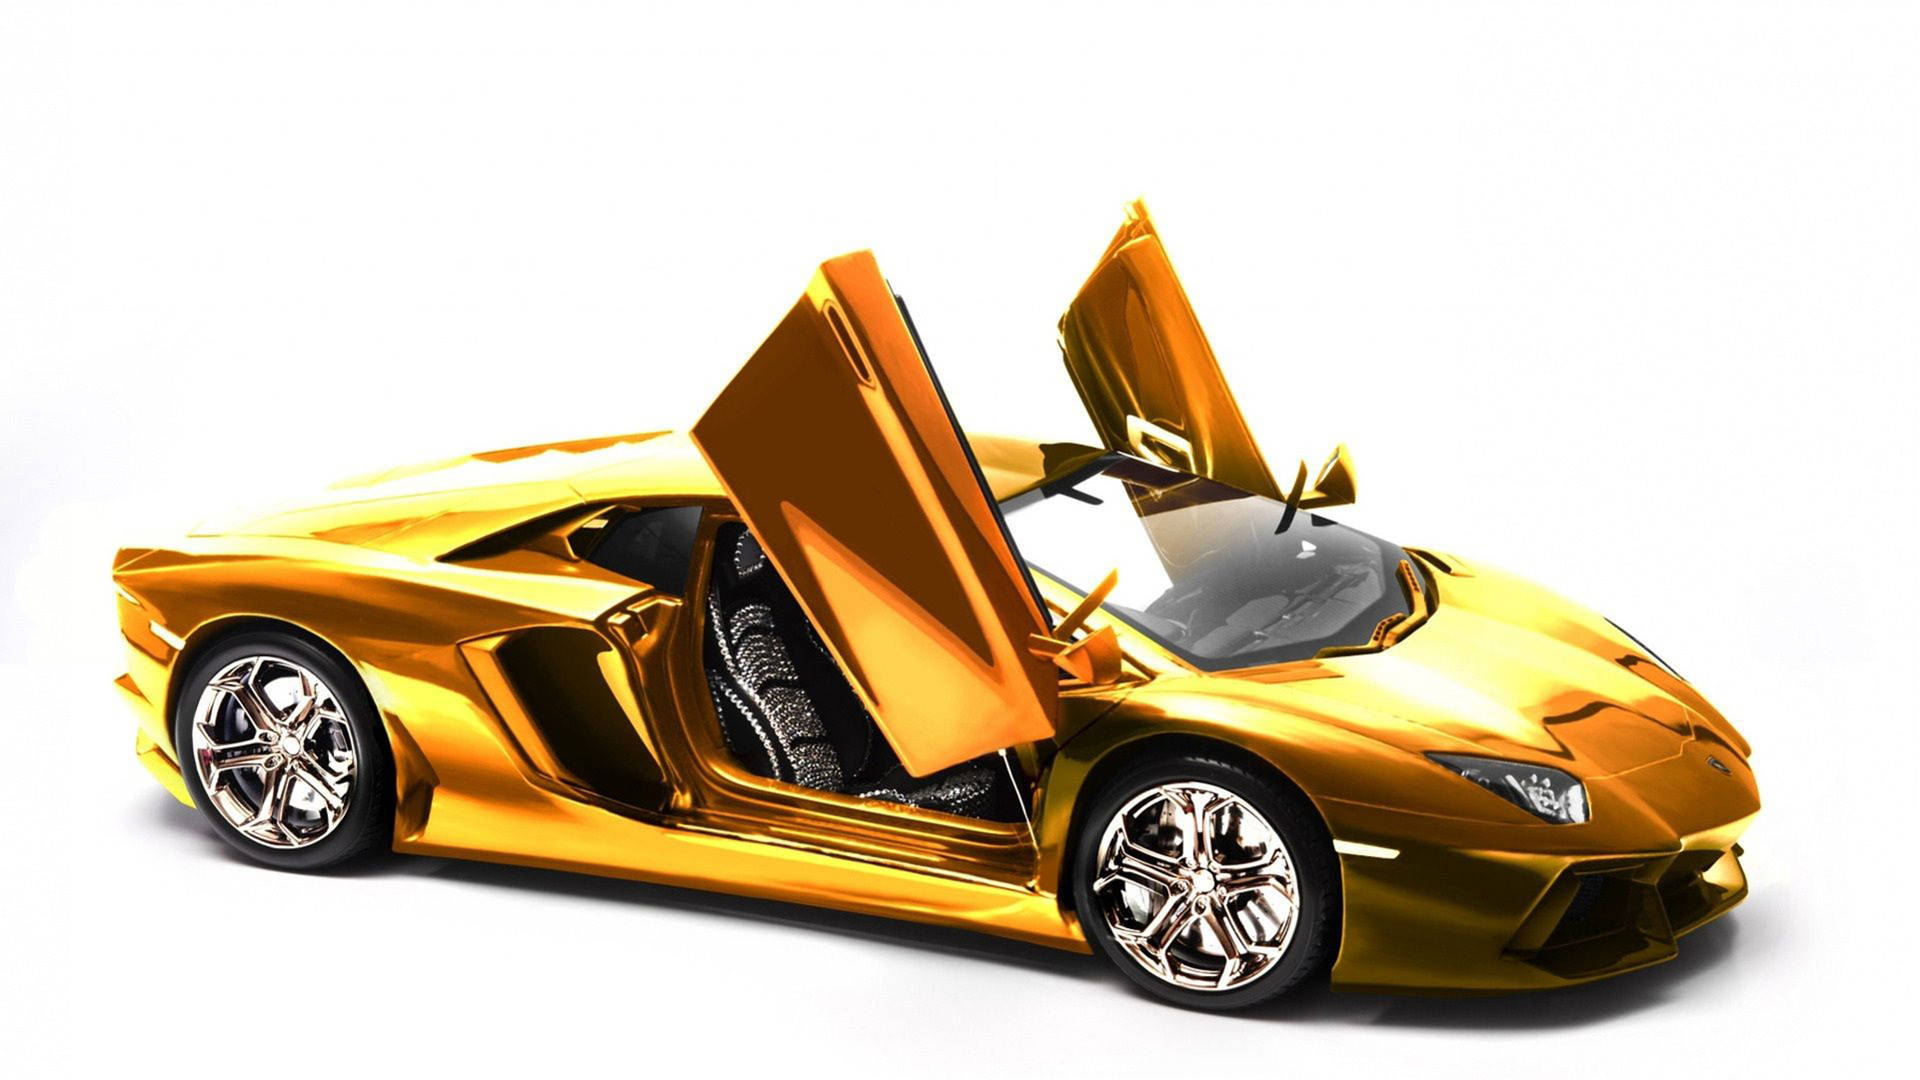 Luxurious Gold Cool Car Wallpaper